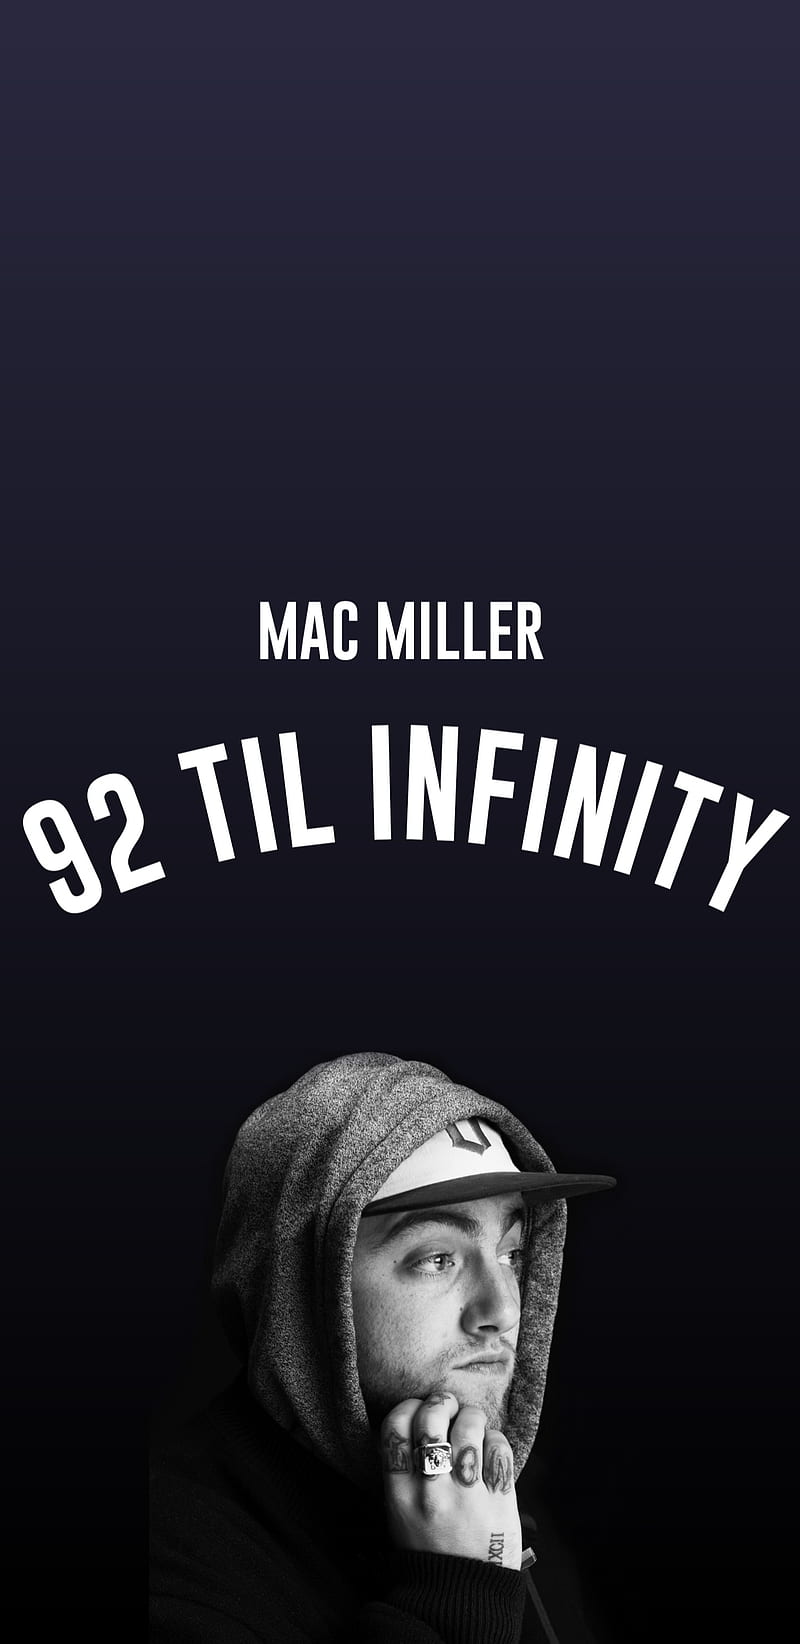 Mac Miller Wallpapers  Top 25 Best Mac Miller Wallpapers Download